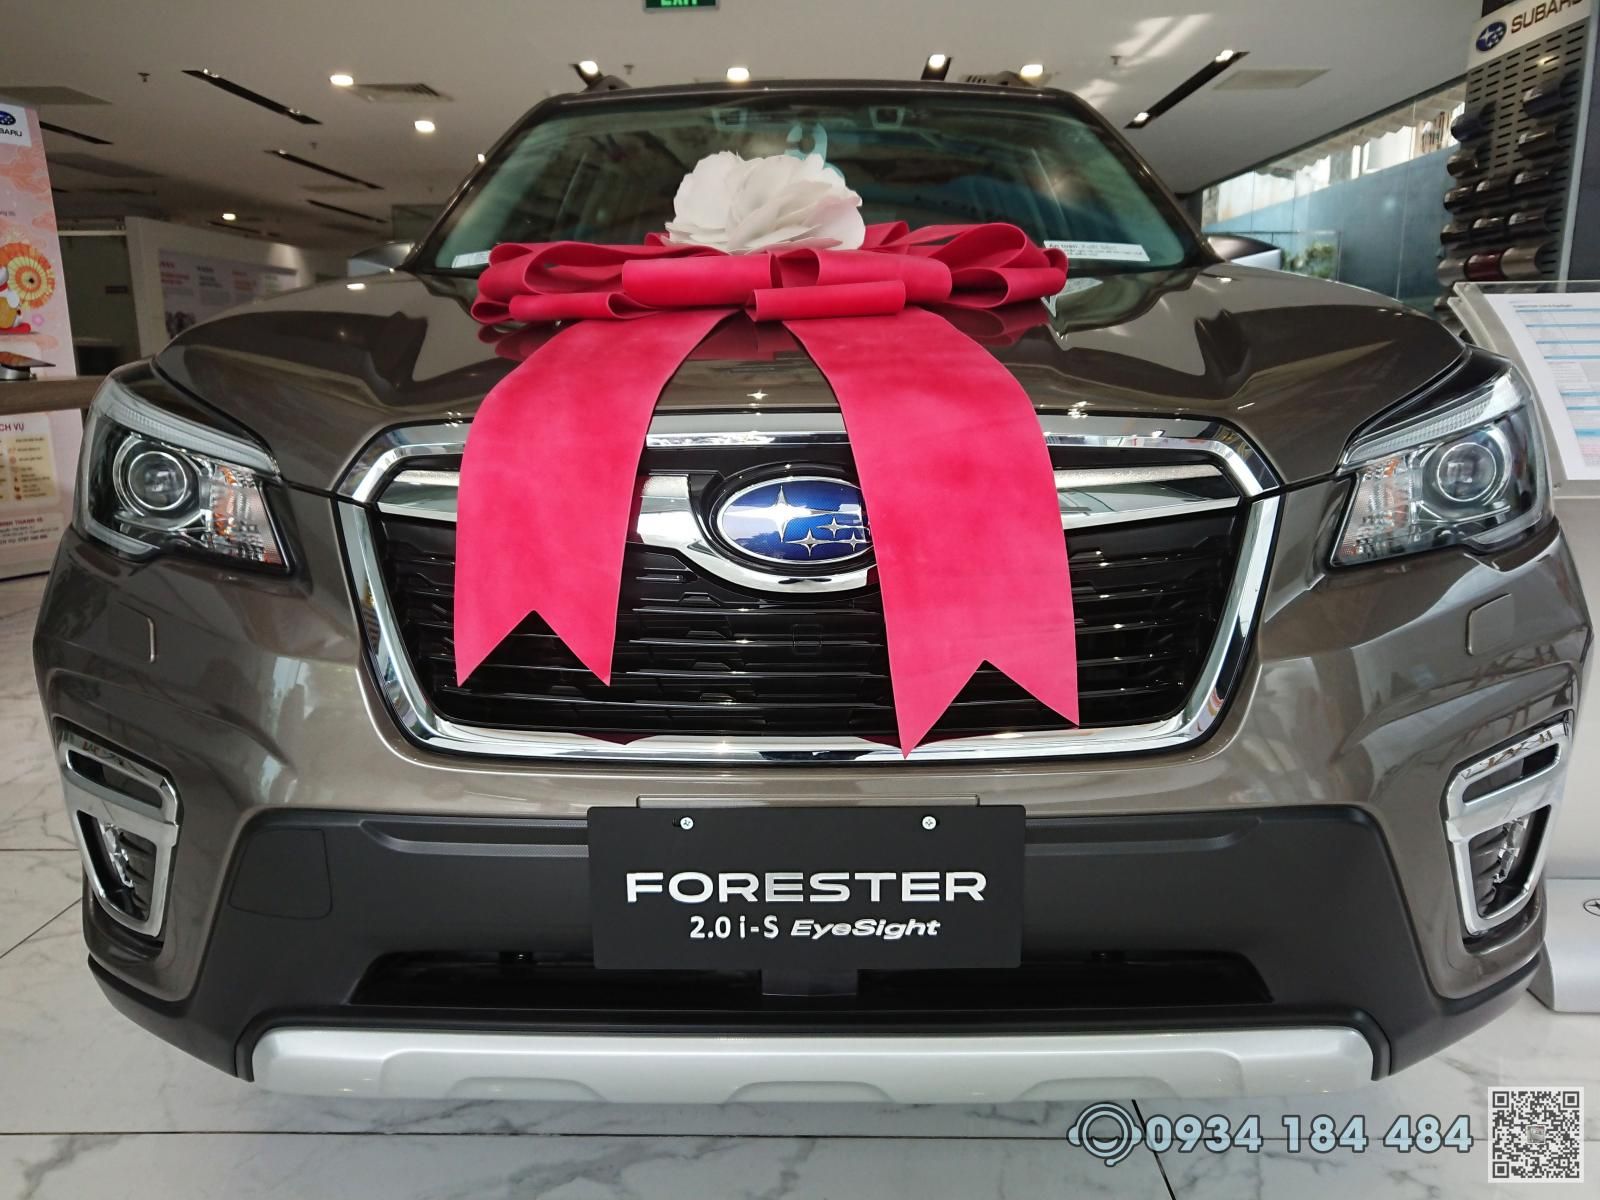 Subaru Forester 2021 - Cơ hội sở hữu Subaru Forester (SUV 5 chỗ) với ưu đãi lên đến 229 triệu đồng